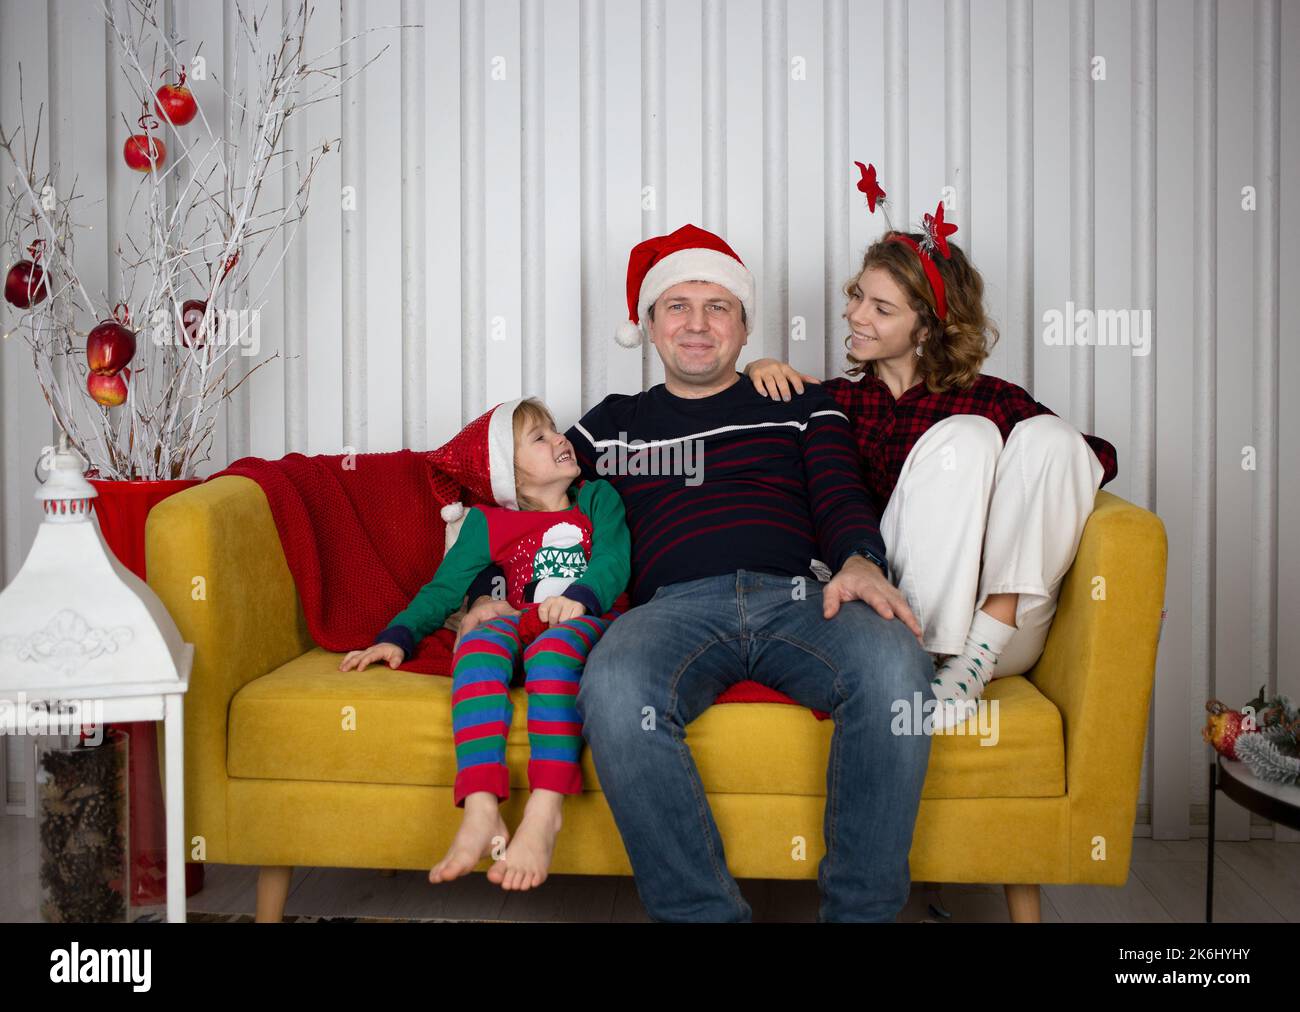 Felice anno nuovo e Buon Natale. papà gioioso e i suoi figli sono seduti in camera su un luminoso divano giallo in cappelli di santa. emozioni positive e amichevoli Foto Stock